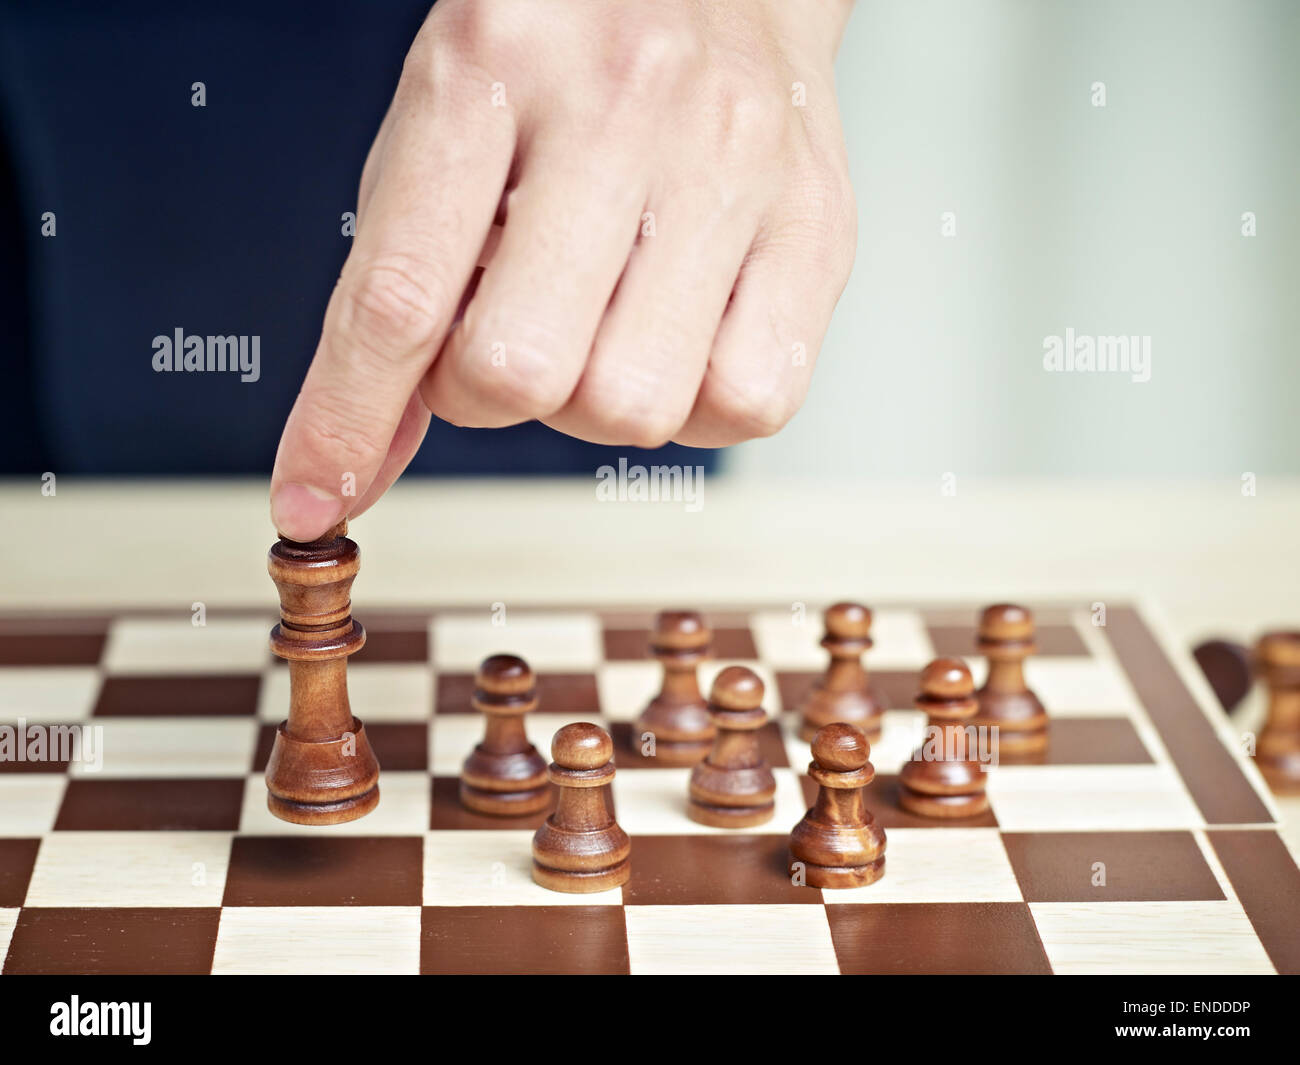 Main d'un homme le déplacement d'une pièce d'échecs Banque D'Images